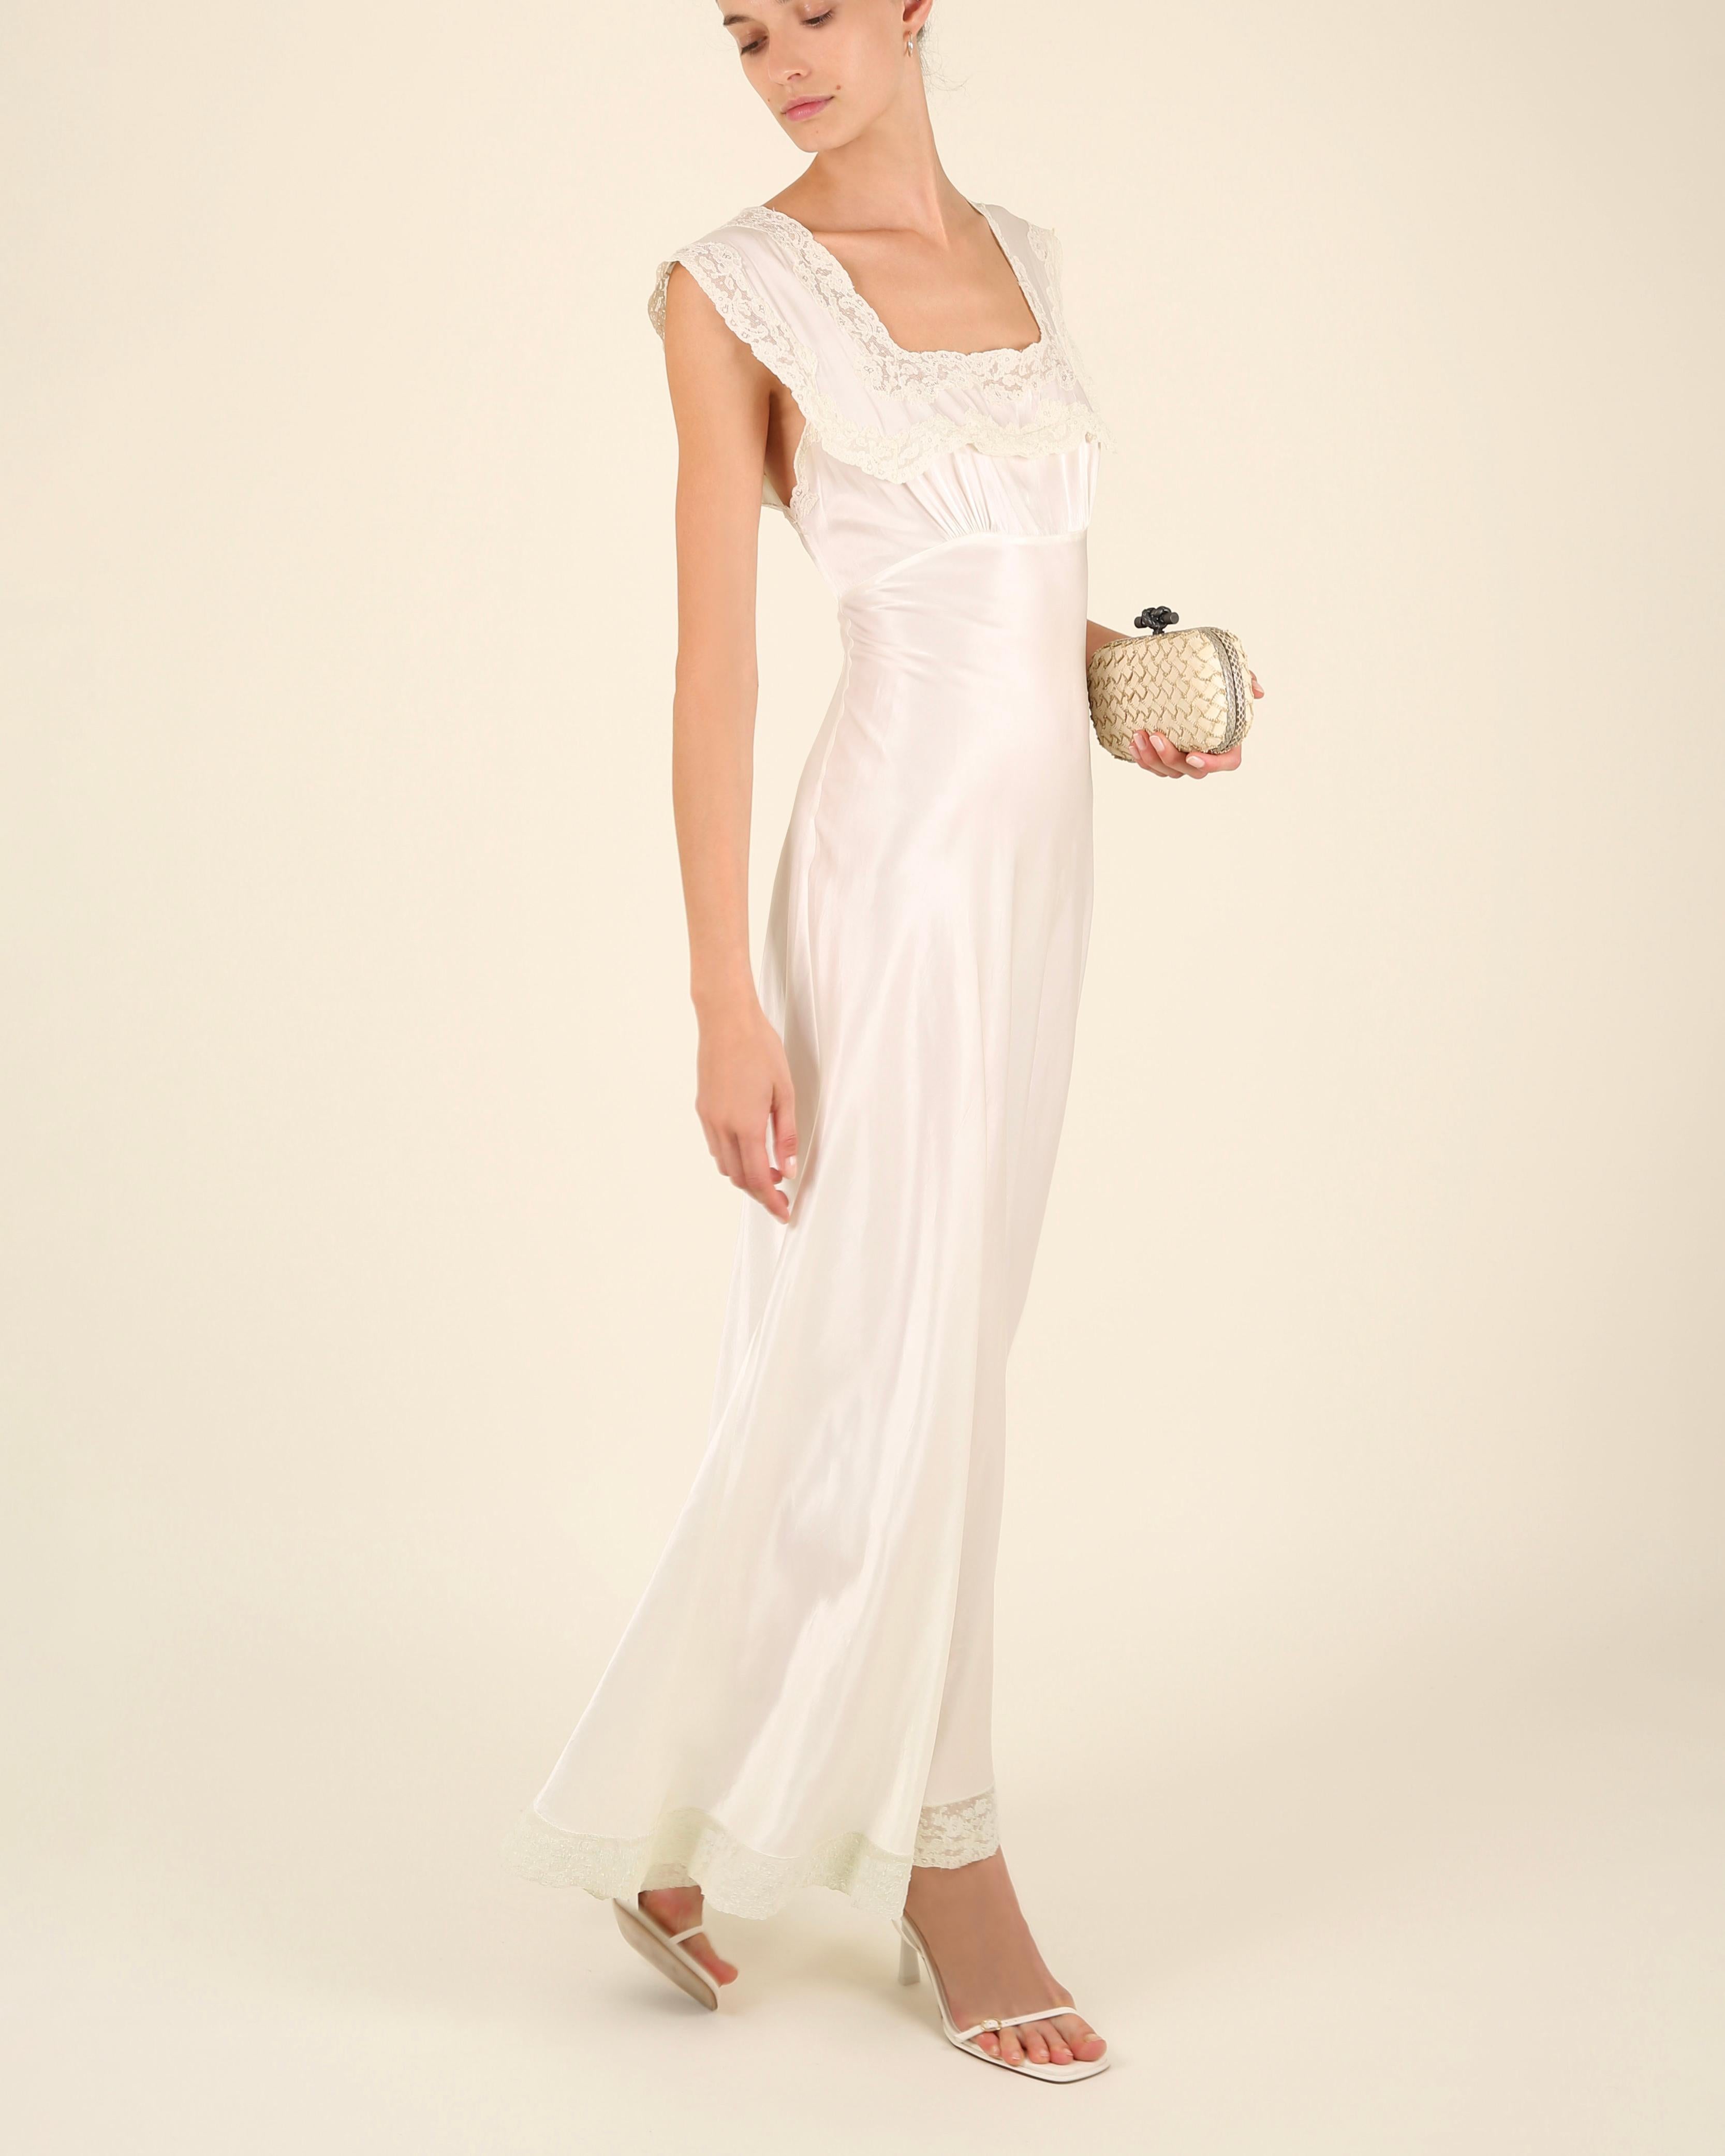 Heavenly Fischer vintage 40s silk white ivory lace wedding night gown slip dress 3